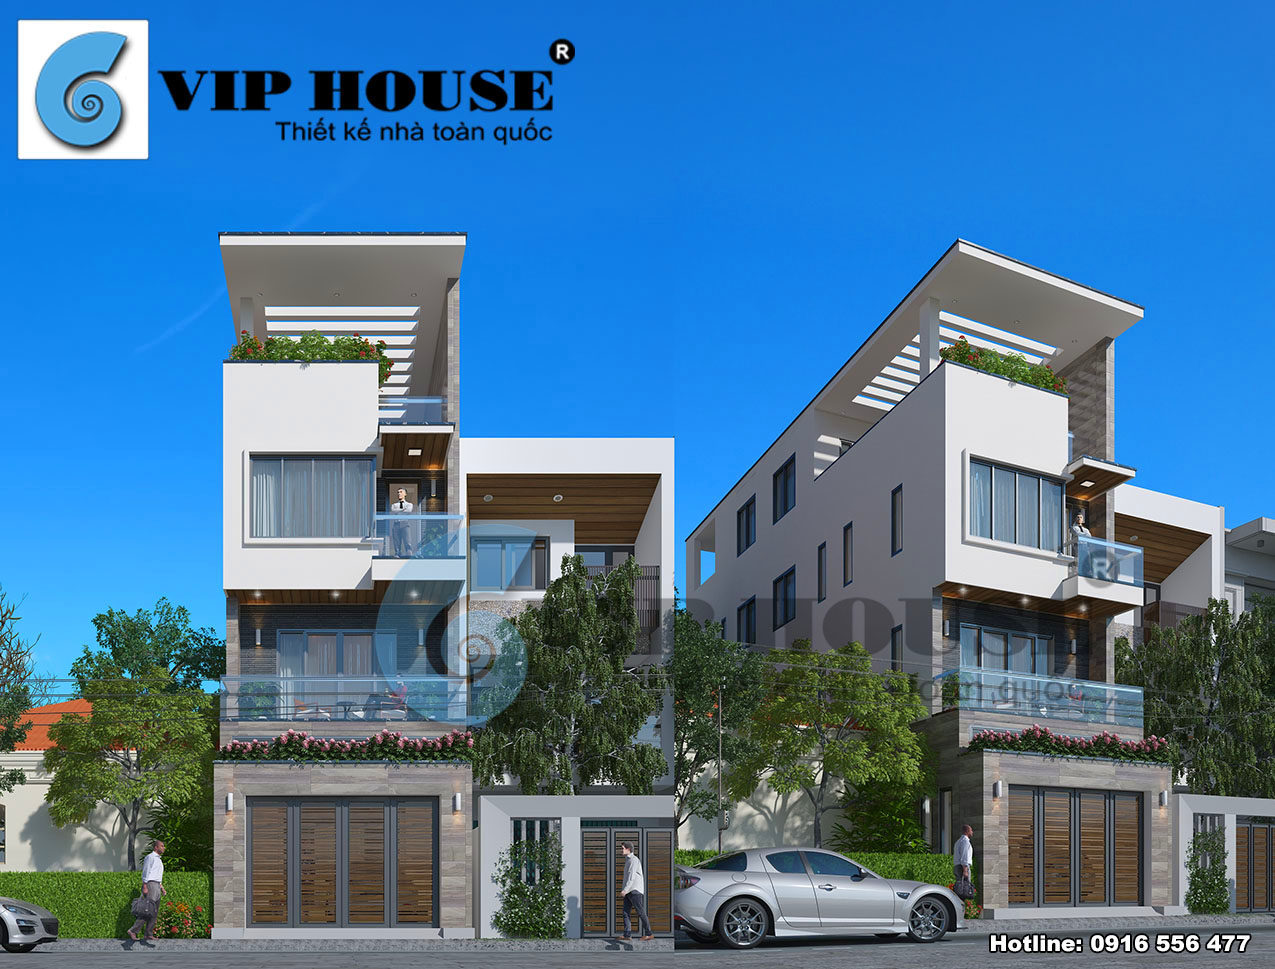 Hình ảnh: Mẫu thiết kế nhà lô phố phong cách hiện đại được thực hiện bởi kts Vip House